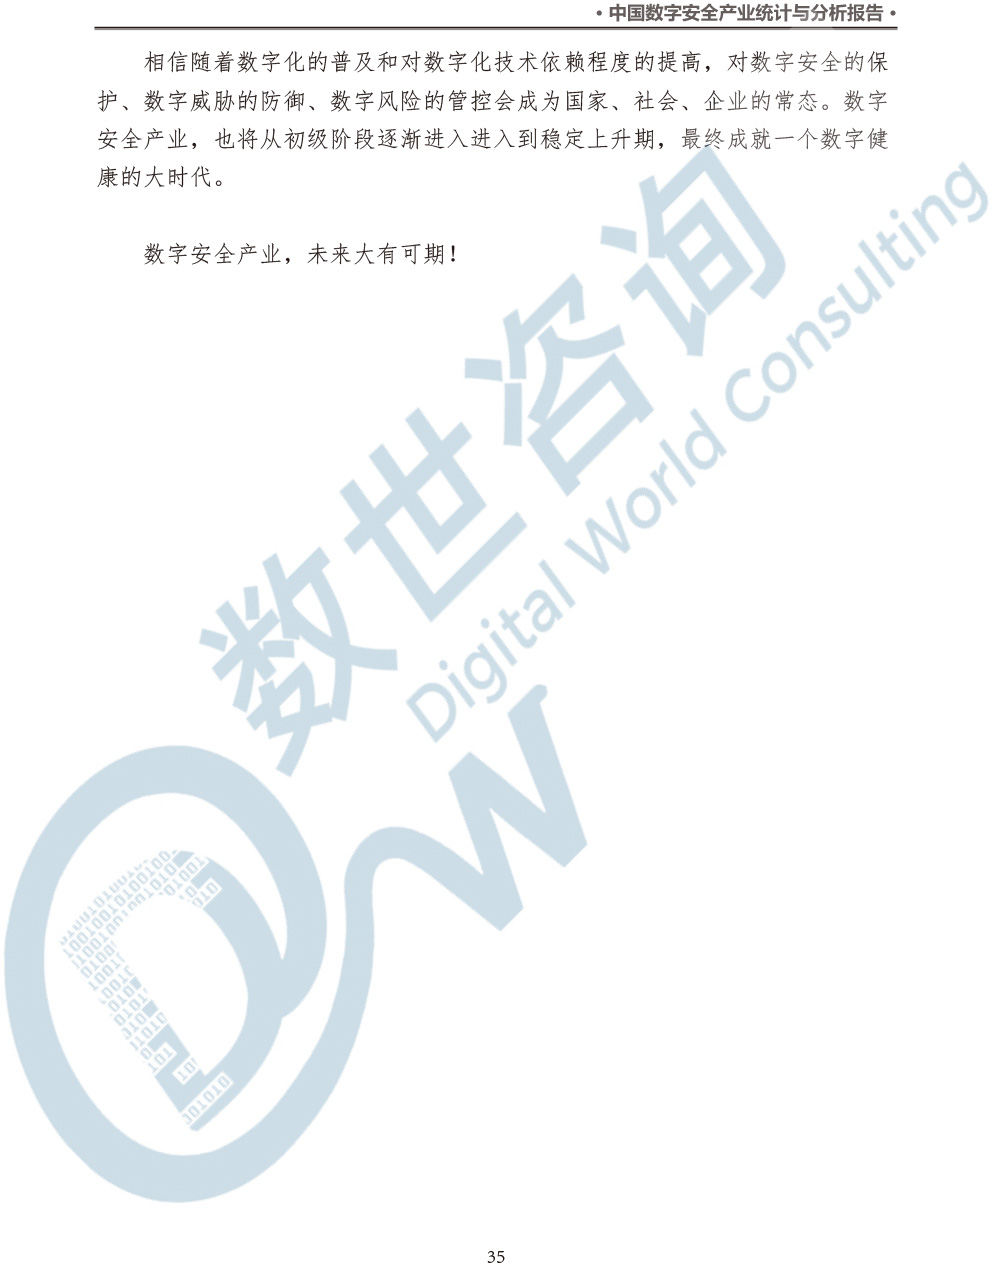 中国数字安全产业统计与分析报告(2022)图-42.jpg